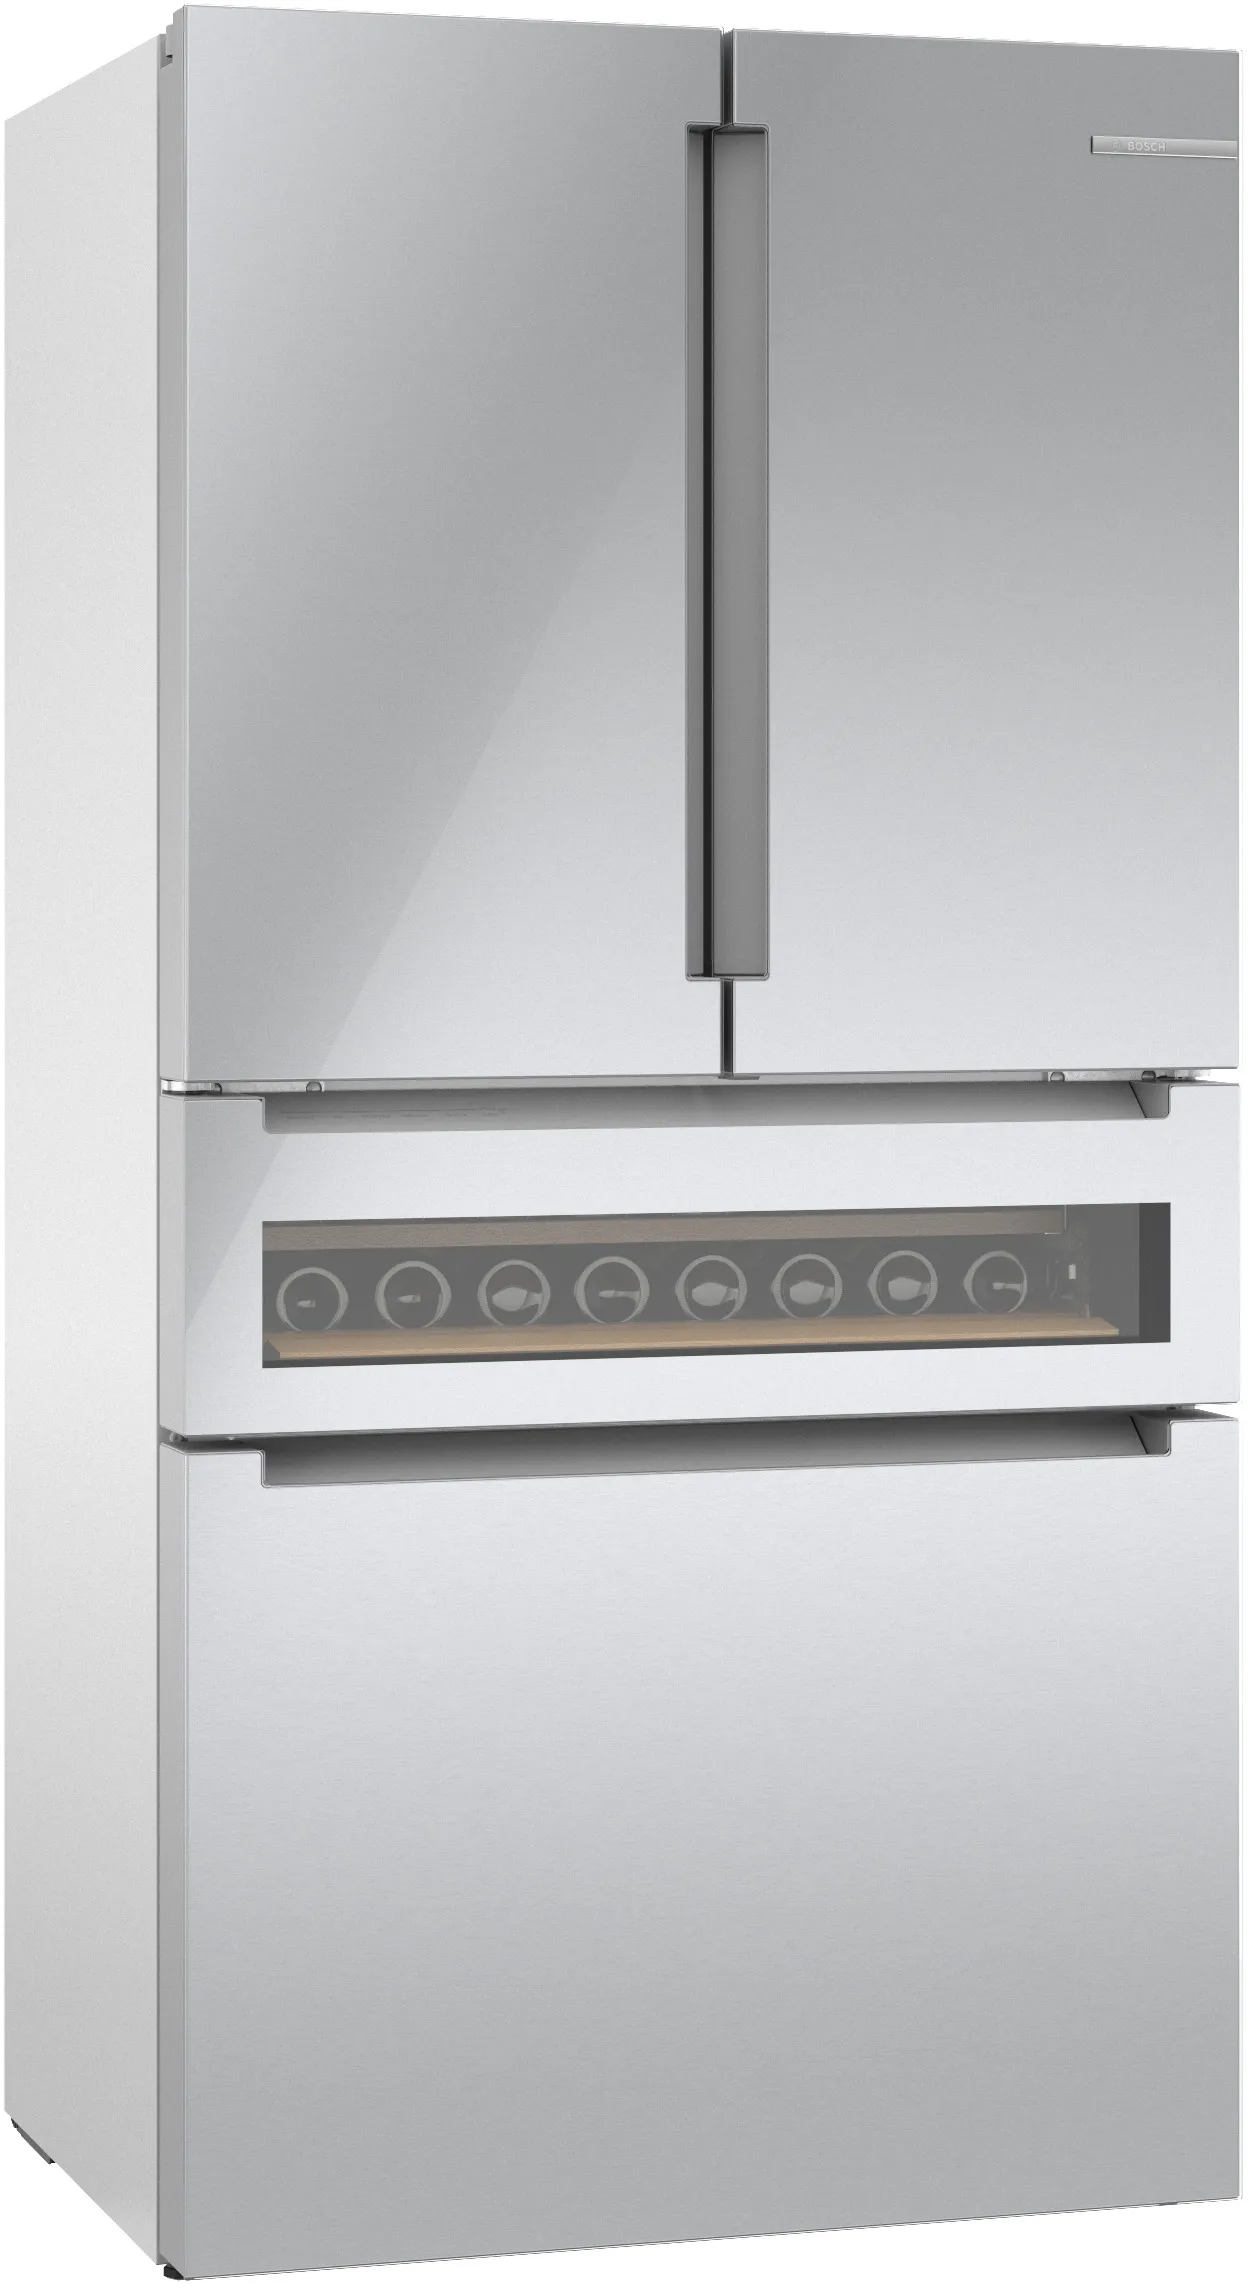 800 Series French Door Bottom Mount Refrigerator, Glass door 36'' Stainless Steel 